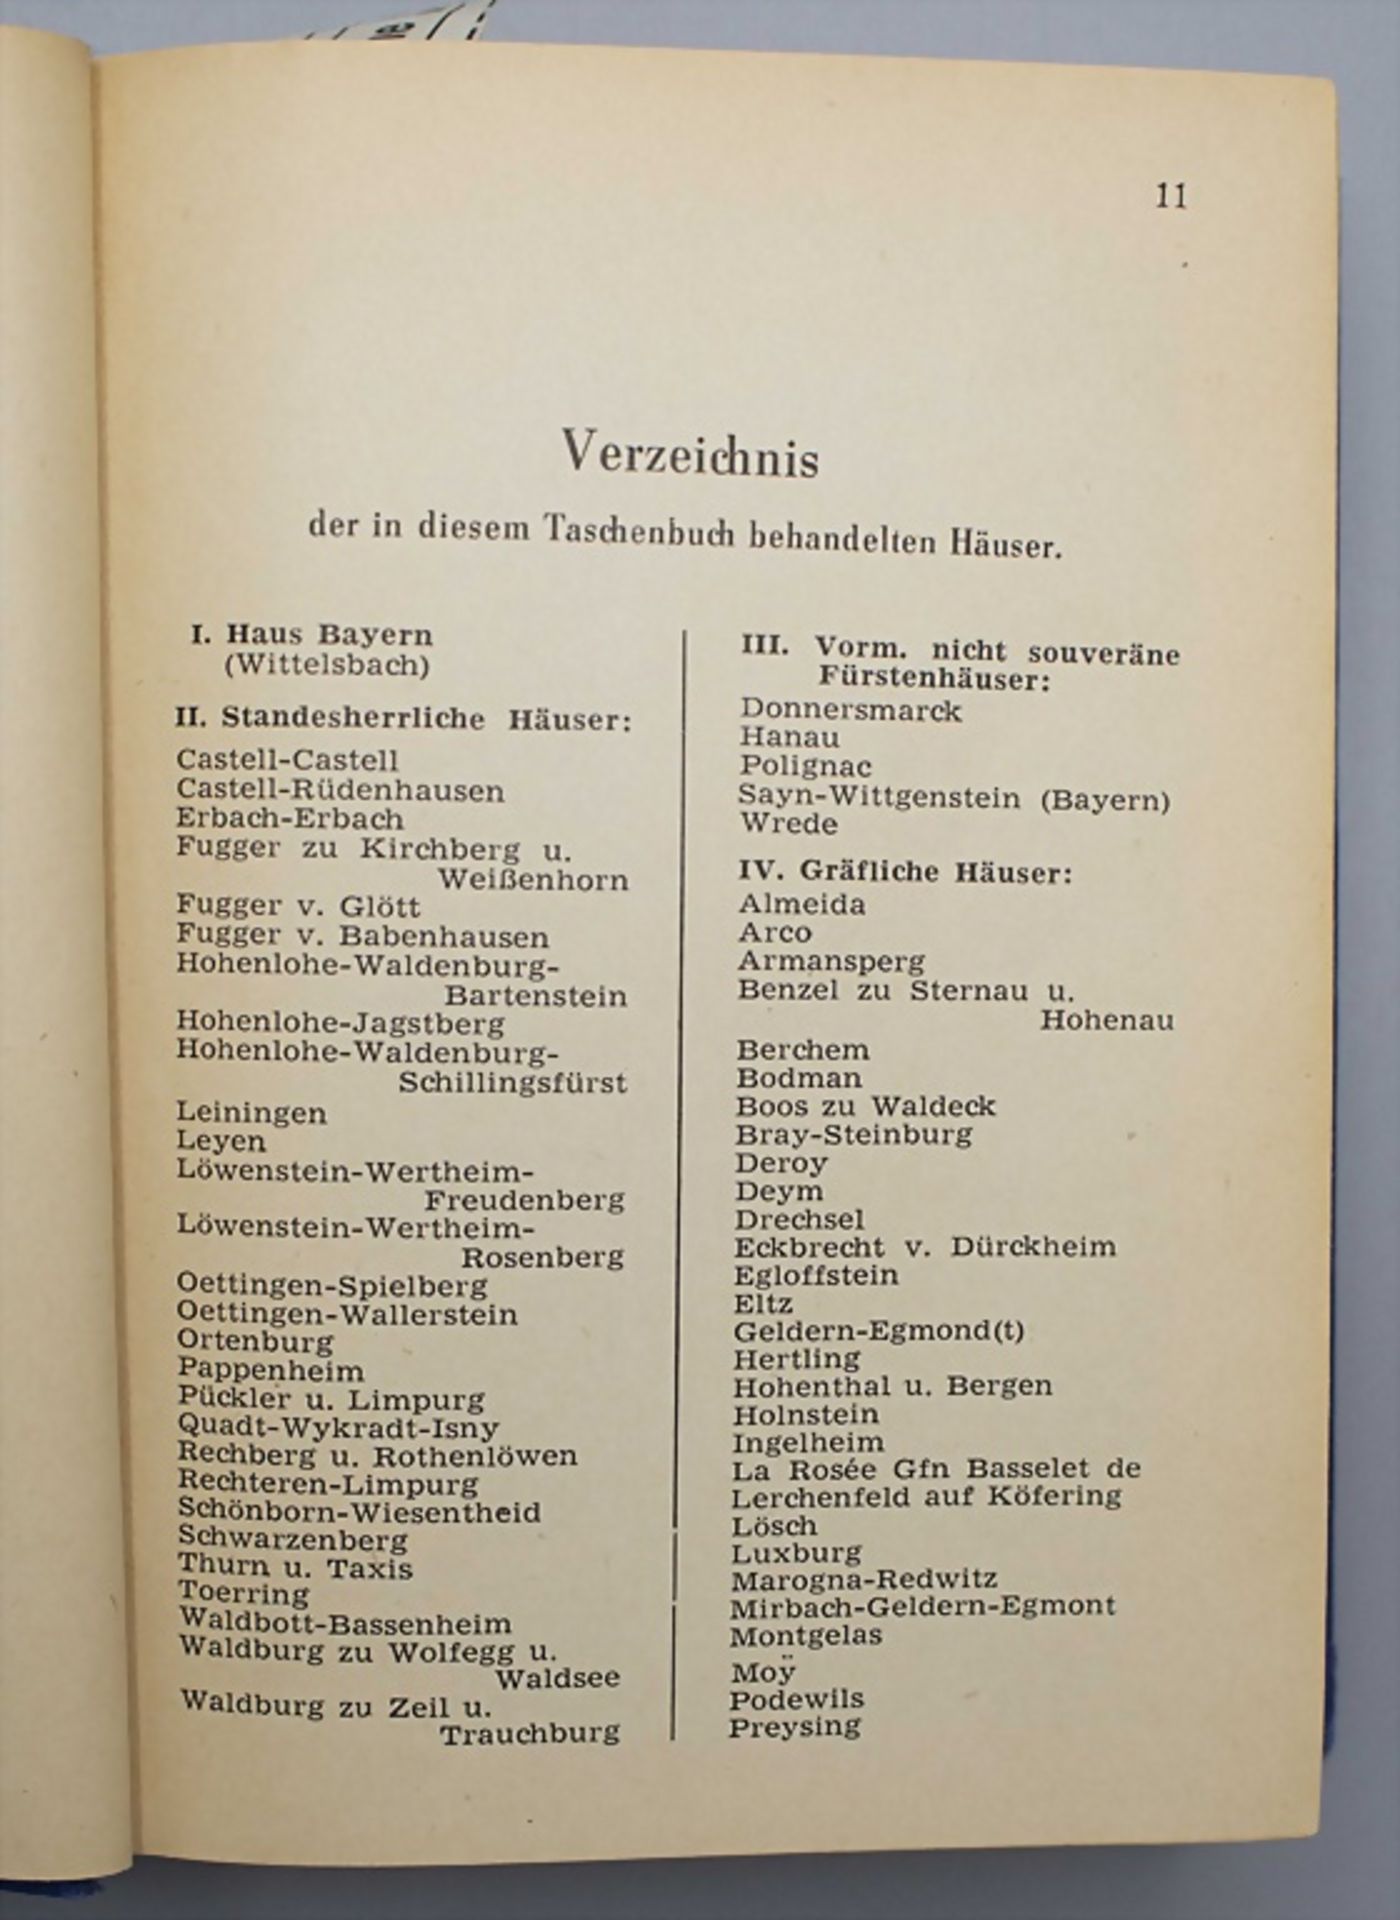 Genealogisches Handbuch des in Bayern immatrikulierten Adels, 1950-1952 - Image 4 of 6